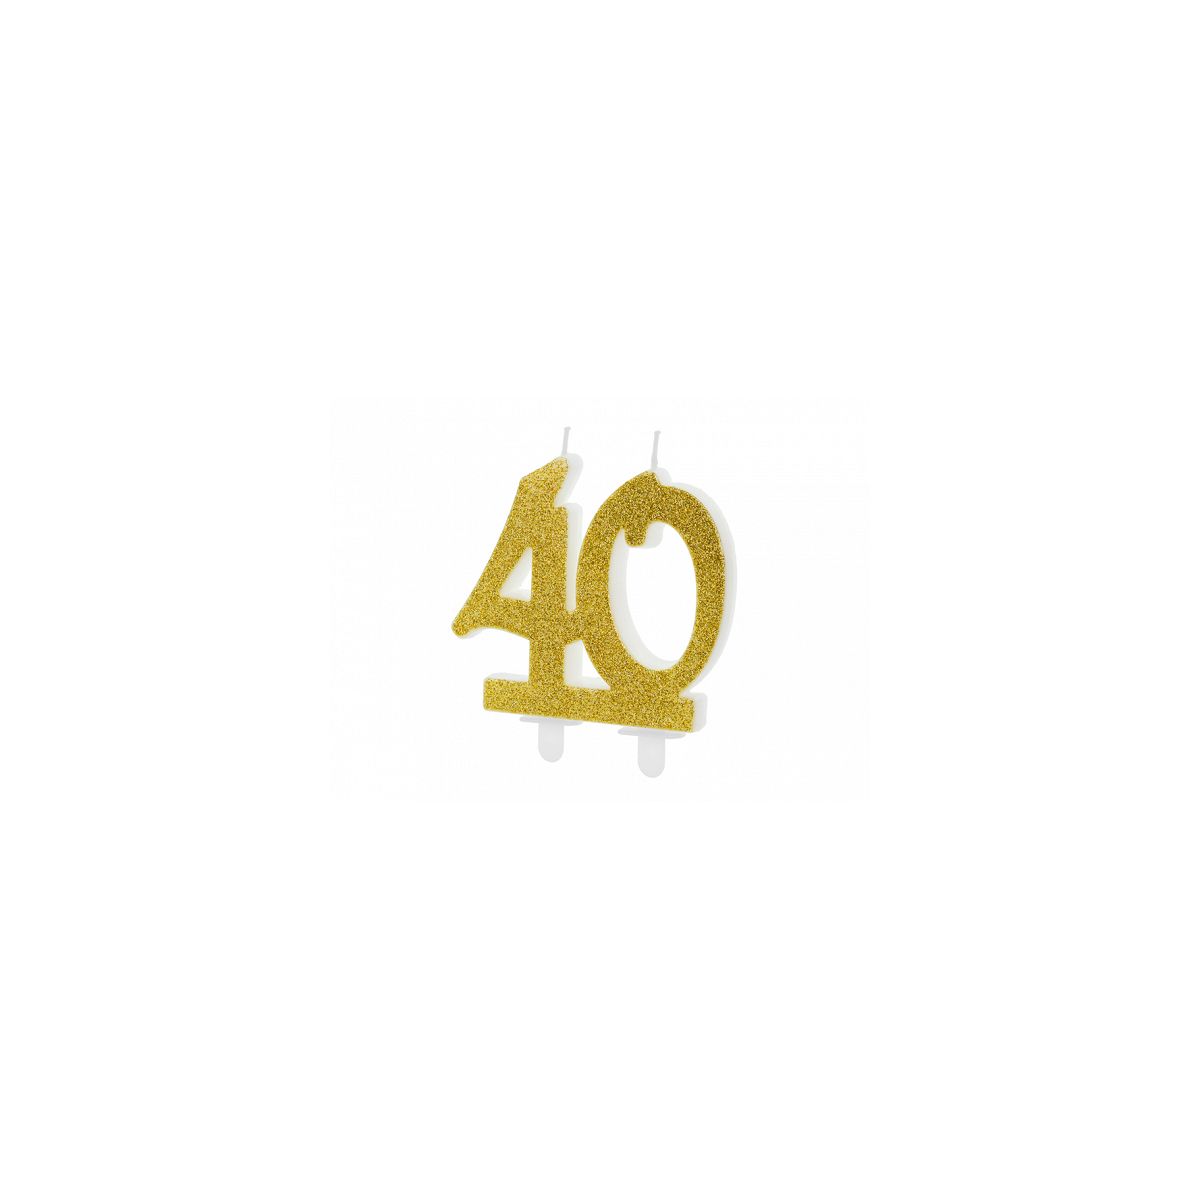 Świeczka urodzinowa liczba 40, złoty 7.5cm Partydeco (SCU5-40-019)